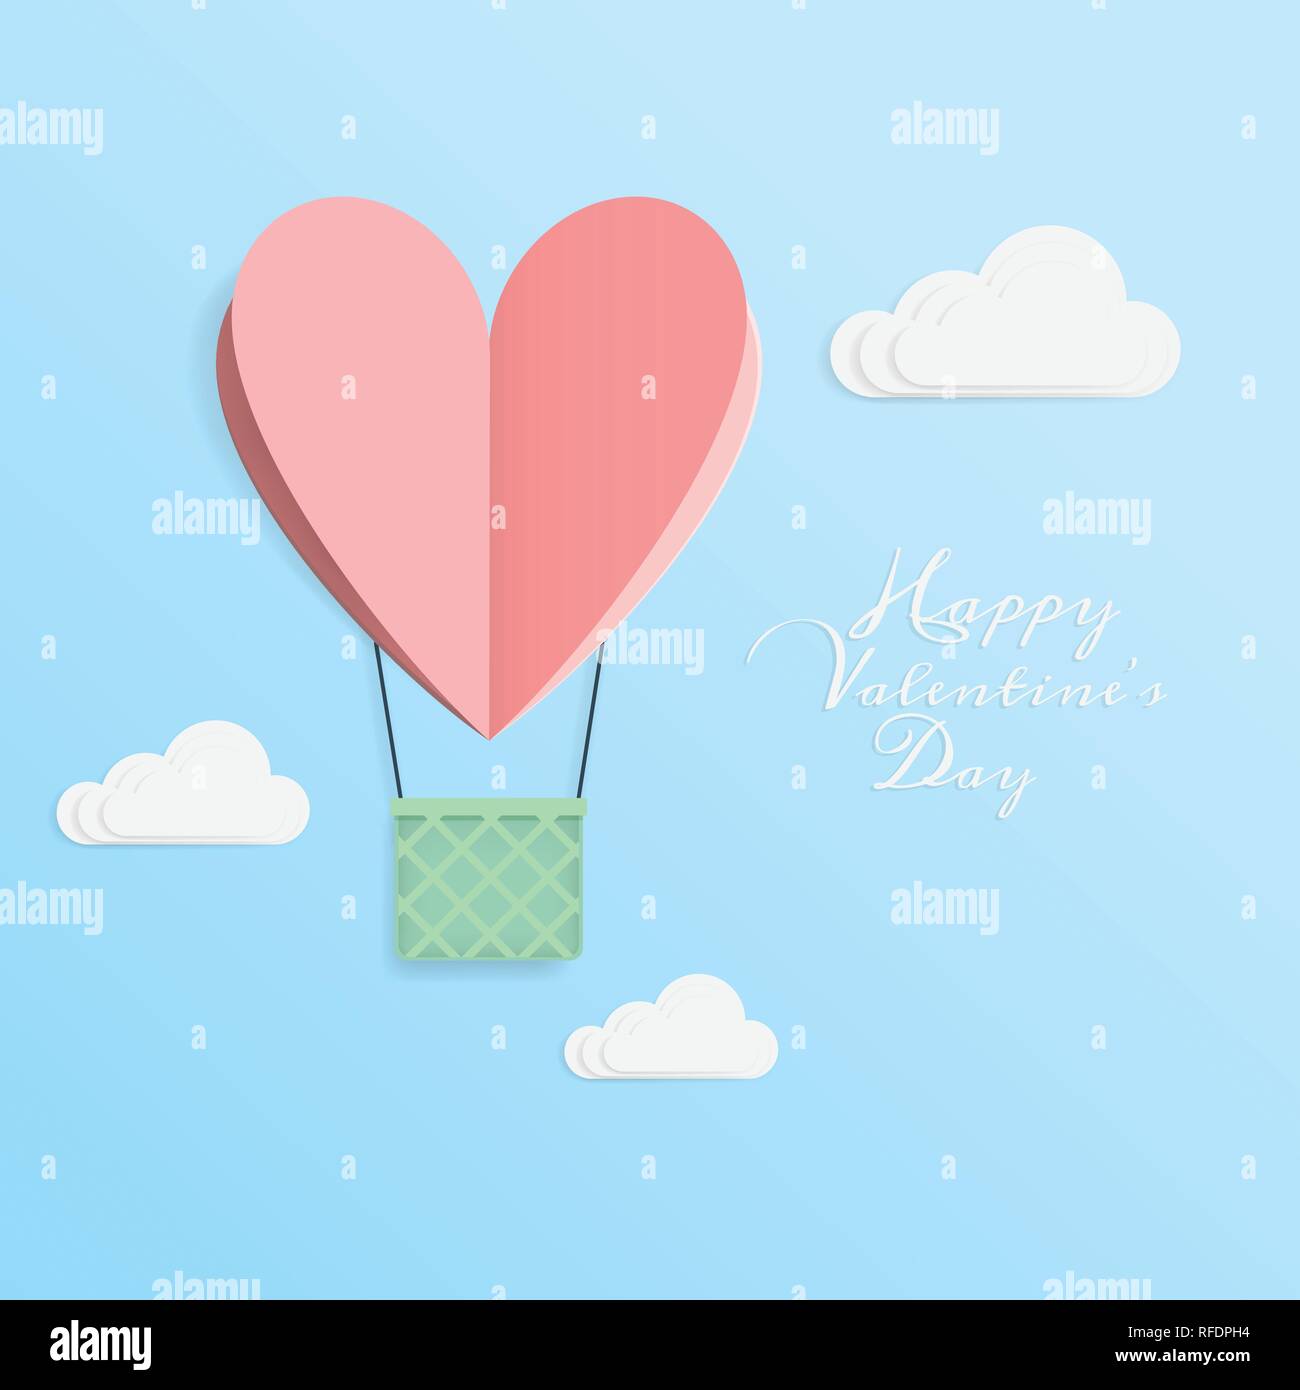 Der Vektor der Liebe und Happy Valentine's Day. origami design elemente Papier schneiden Heißluftballon in Herzform mit Korb bis an den Himmel mit fliegenden Stock Vektor